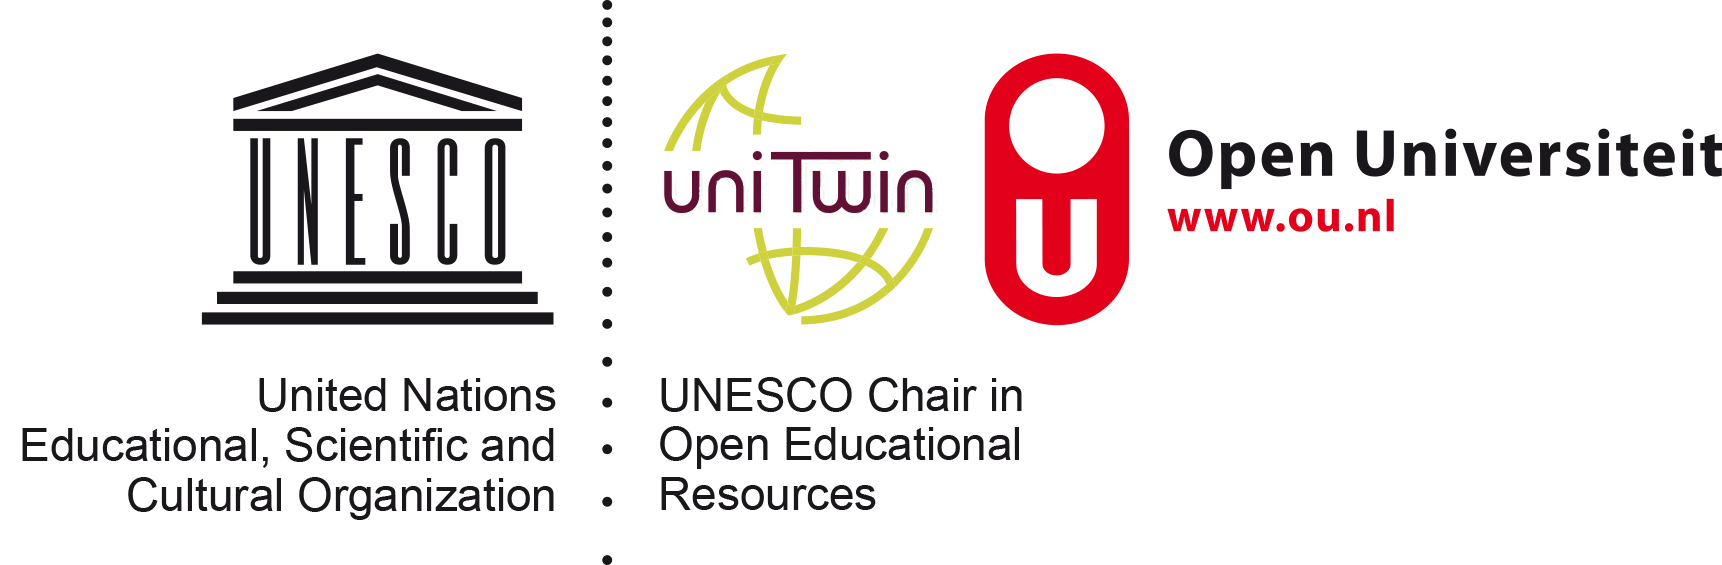 UNESCO Chair in OER Open Universiteit .jpg